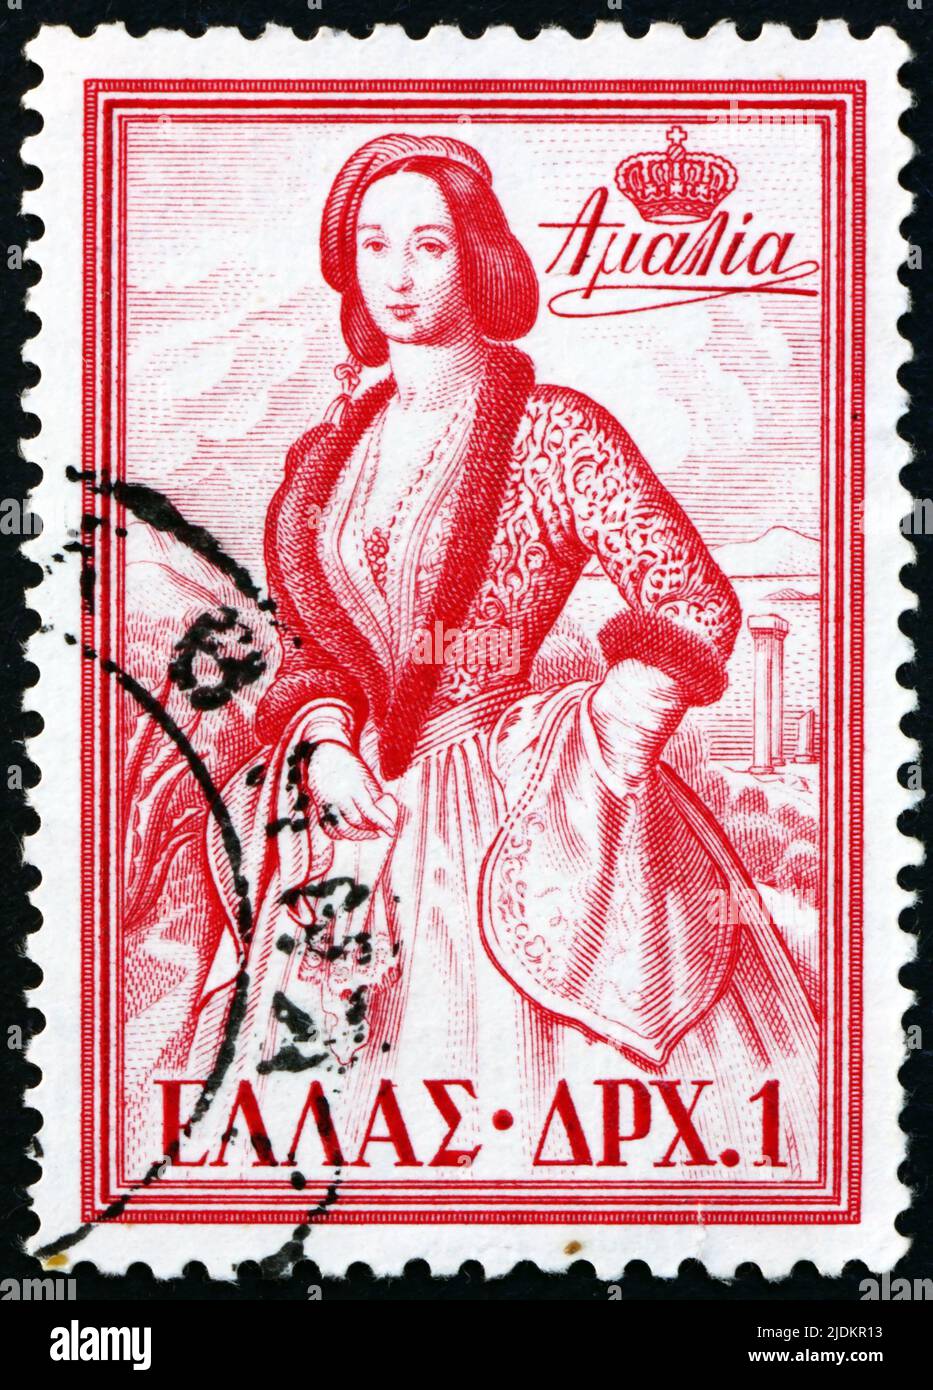 GREECE - CIRCA 1956: a stamp printed in Greece shows Queen Amalia, Queen of Greece, circa 1956 Stock Photo